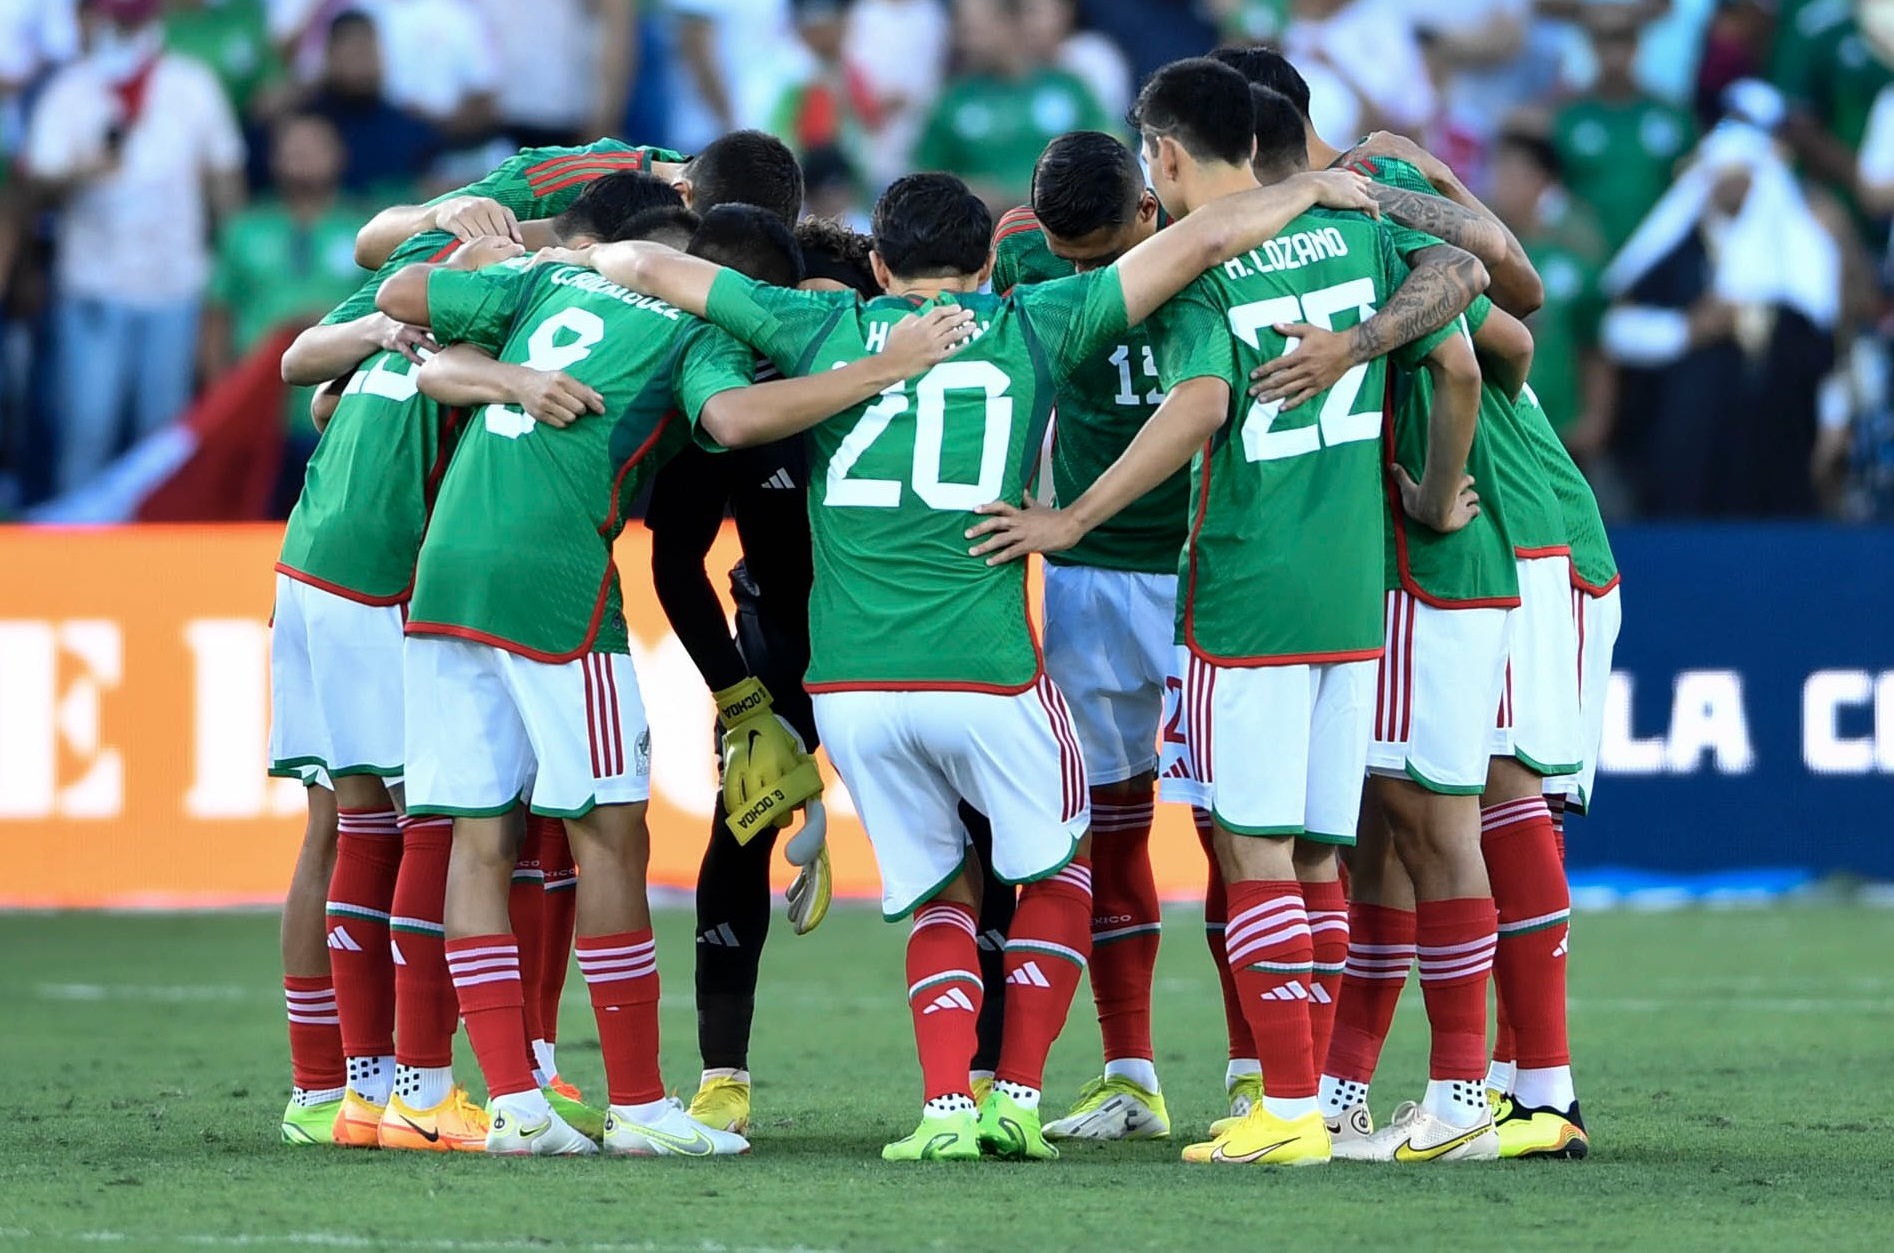 El Tata Martino oficializó la prelista de México para el Mundial Qatar: no citó a Chicharito Hernández y sí a Rogelio Funes Mori